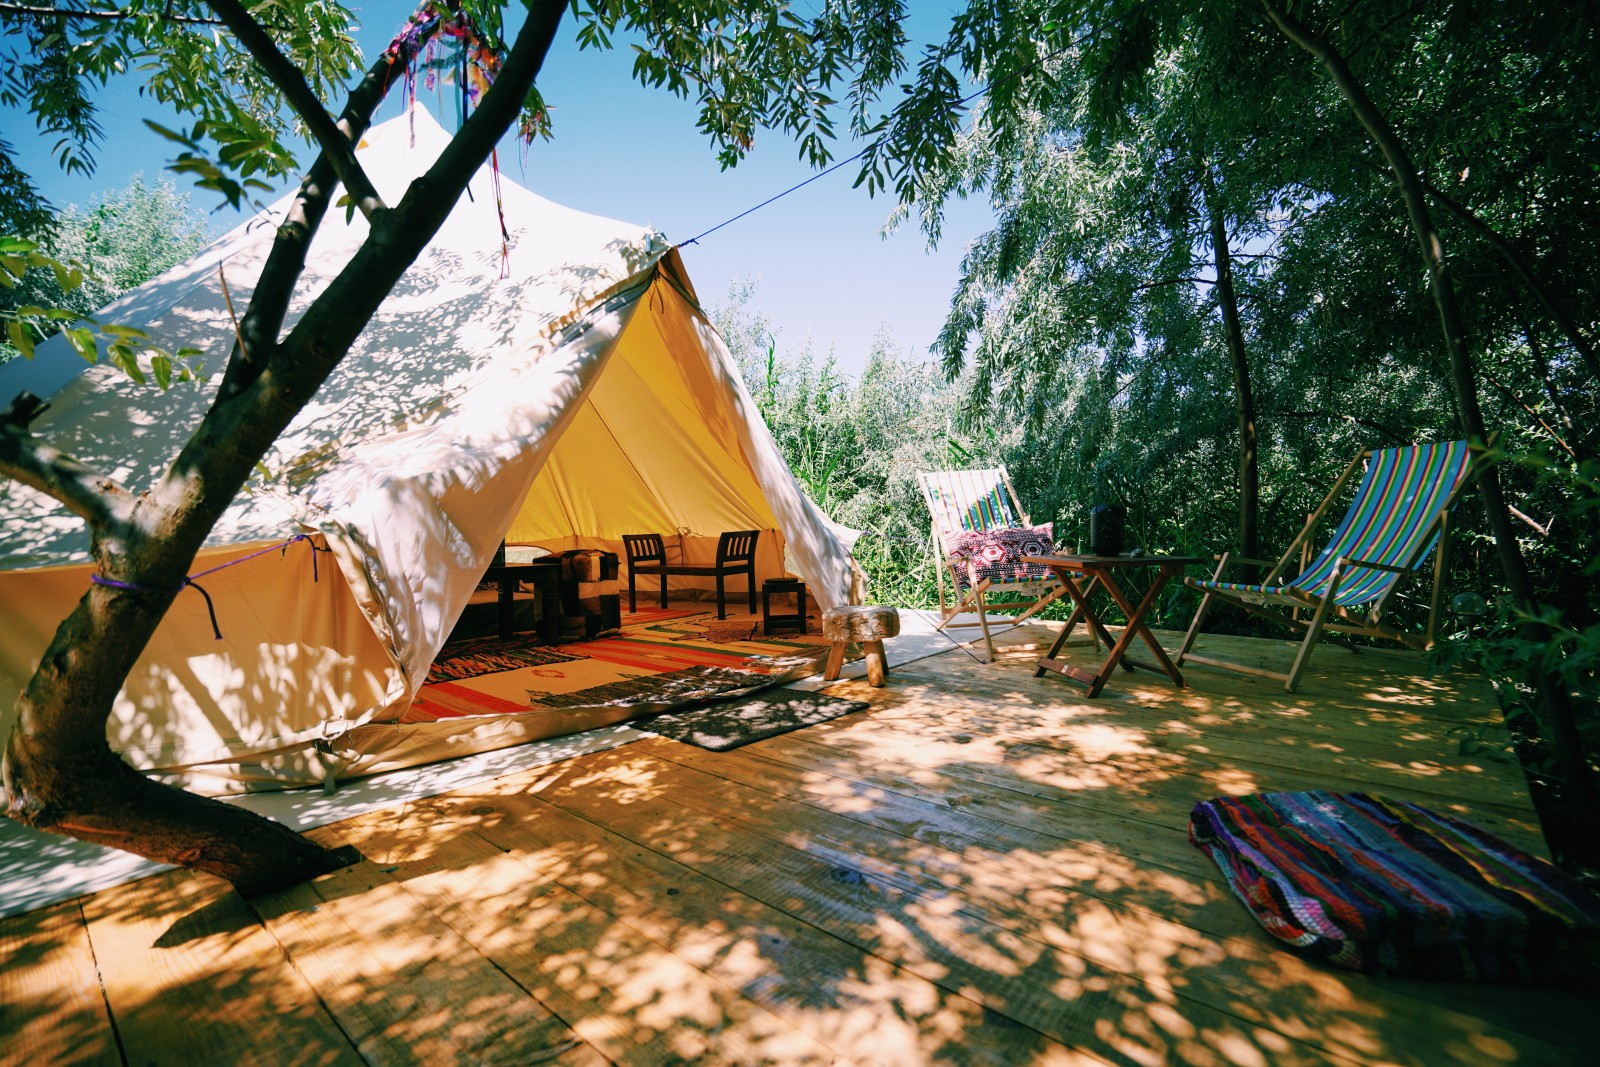 Retreat - Glamouröses Camping, woher kommt der Trend?